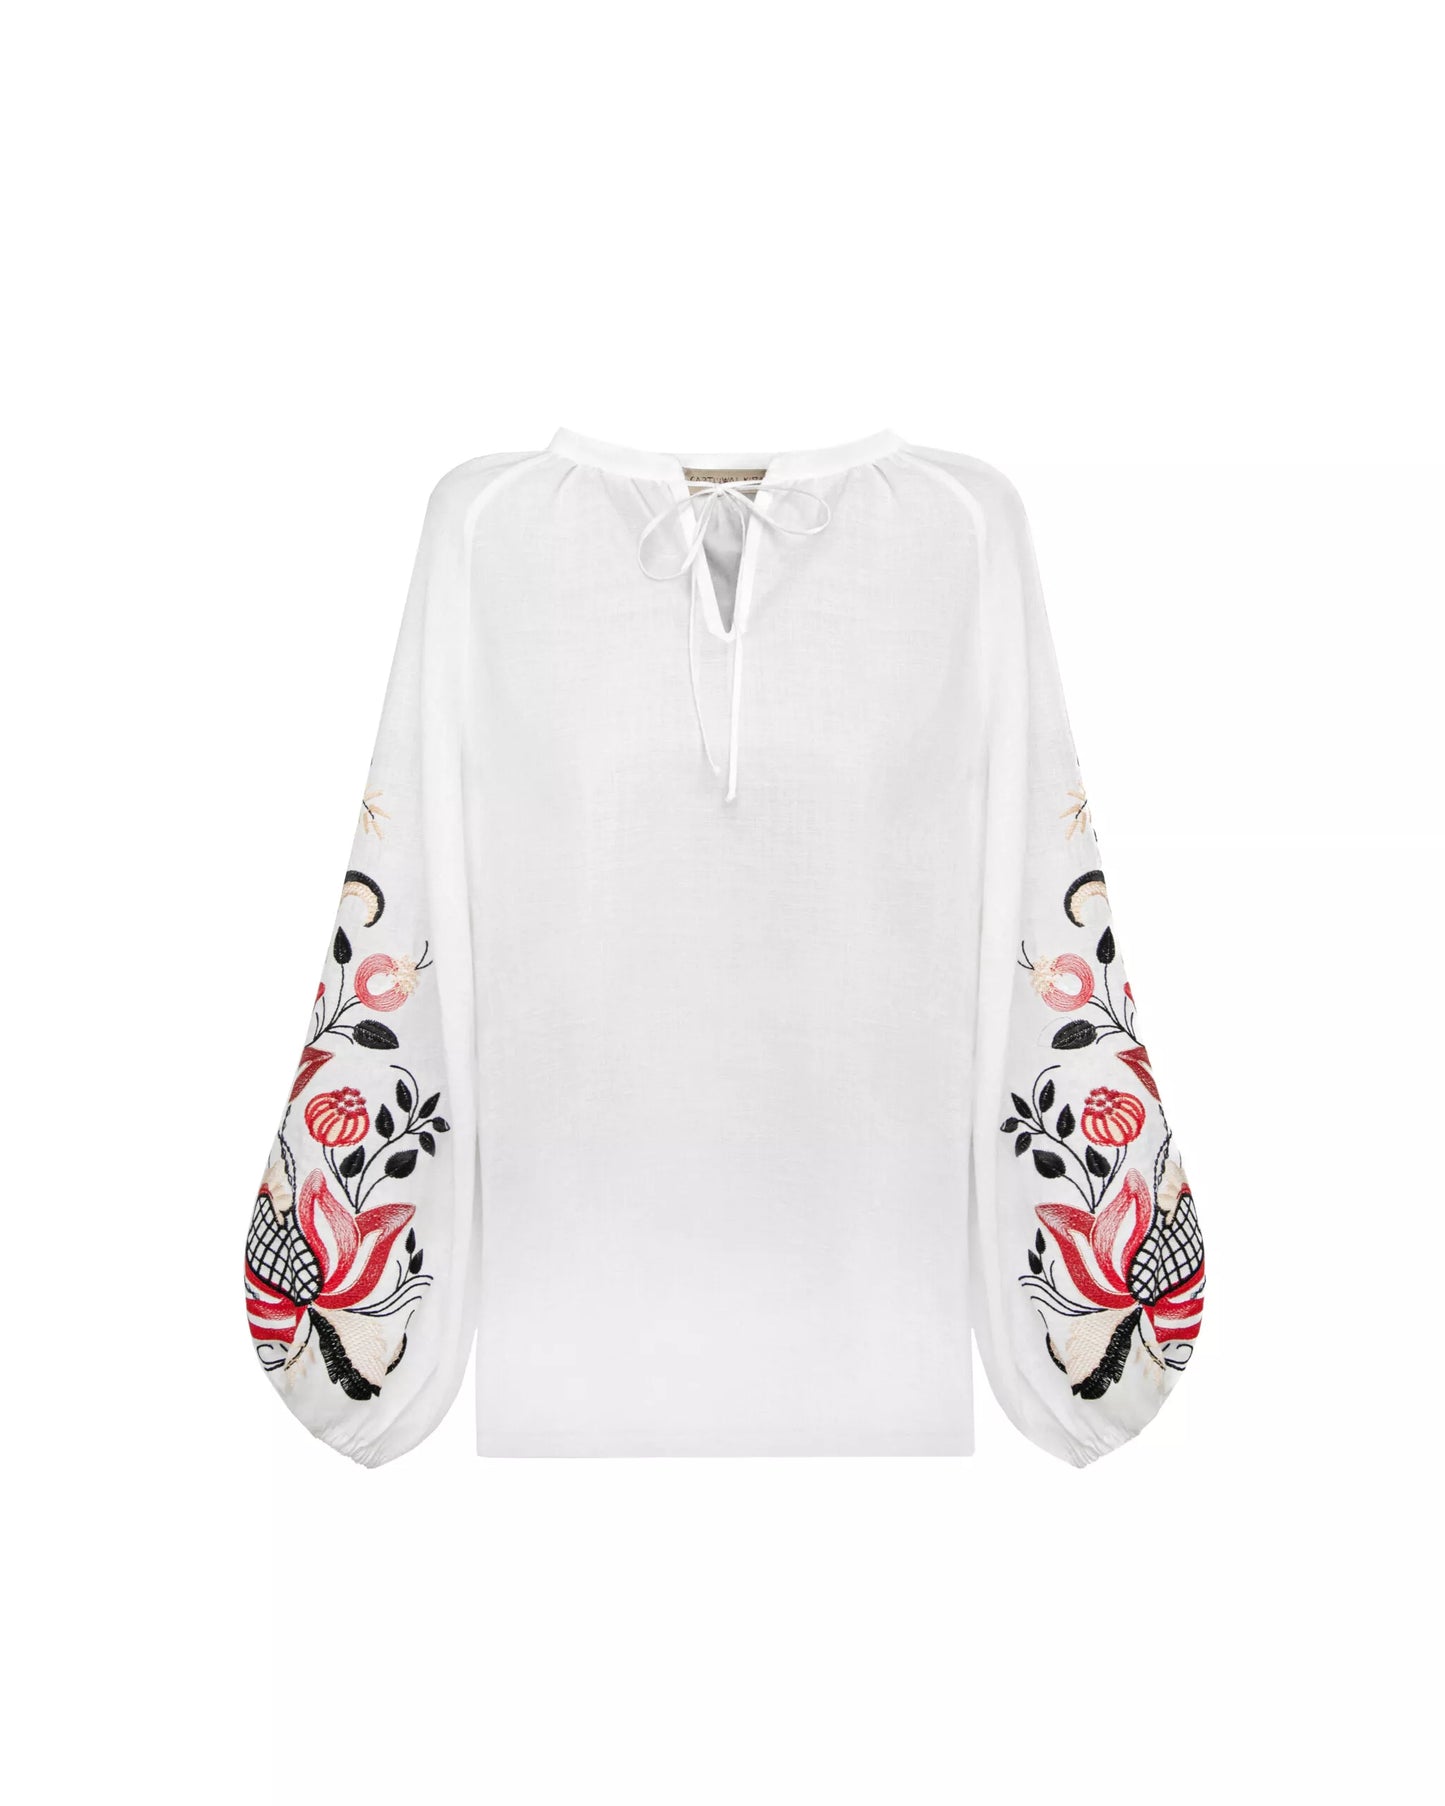 Блузка за мотивами традиційної сорочки з дизайнерською вишивкою Гранатова лоза (барвистий орнамент)